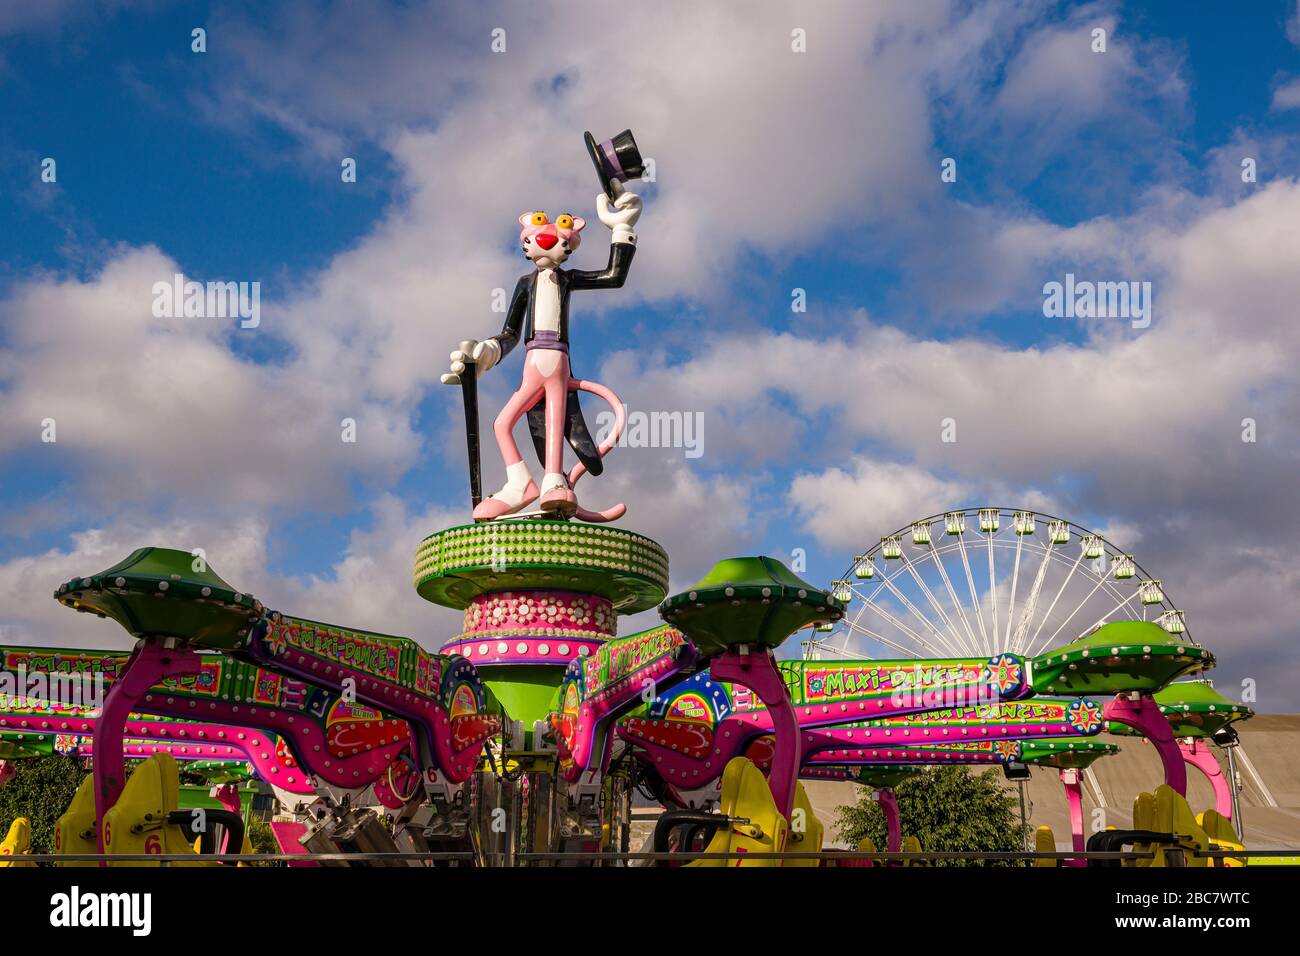 Bunte Skulptur der Comicfigur Pink Panther in einem Vergnügungspark Stockfoto